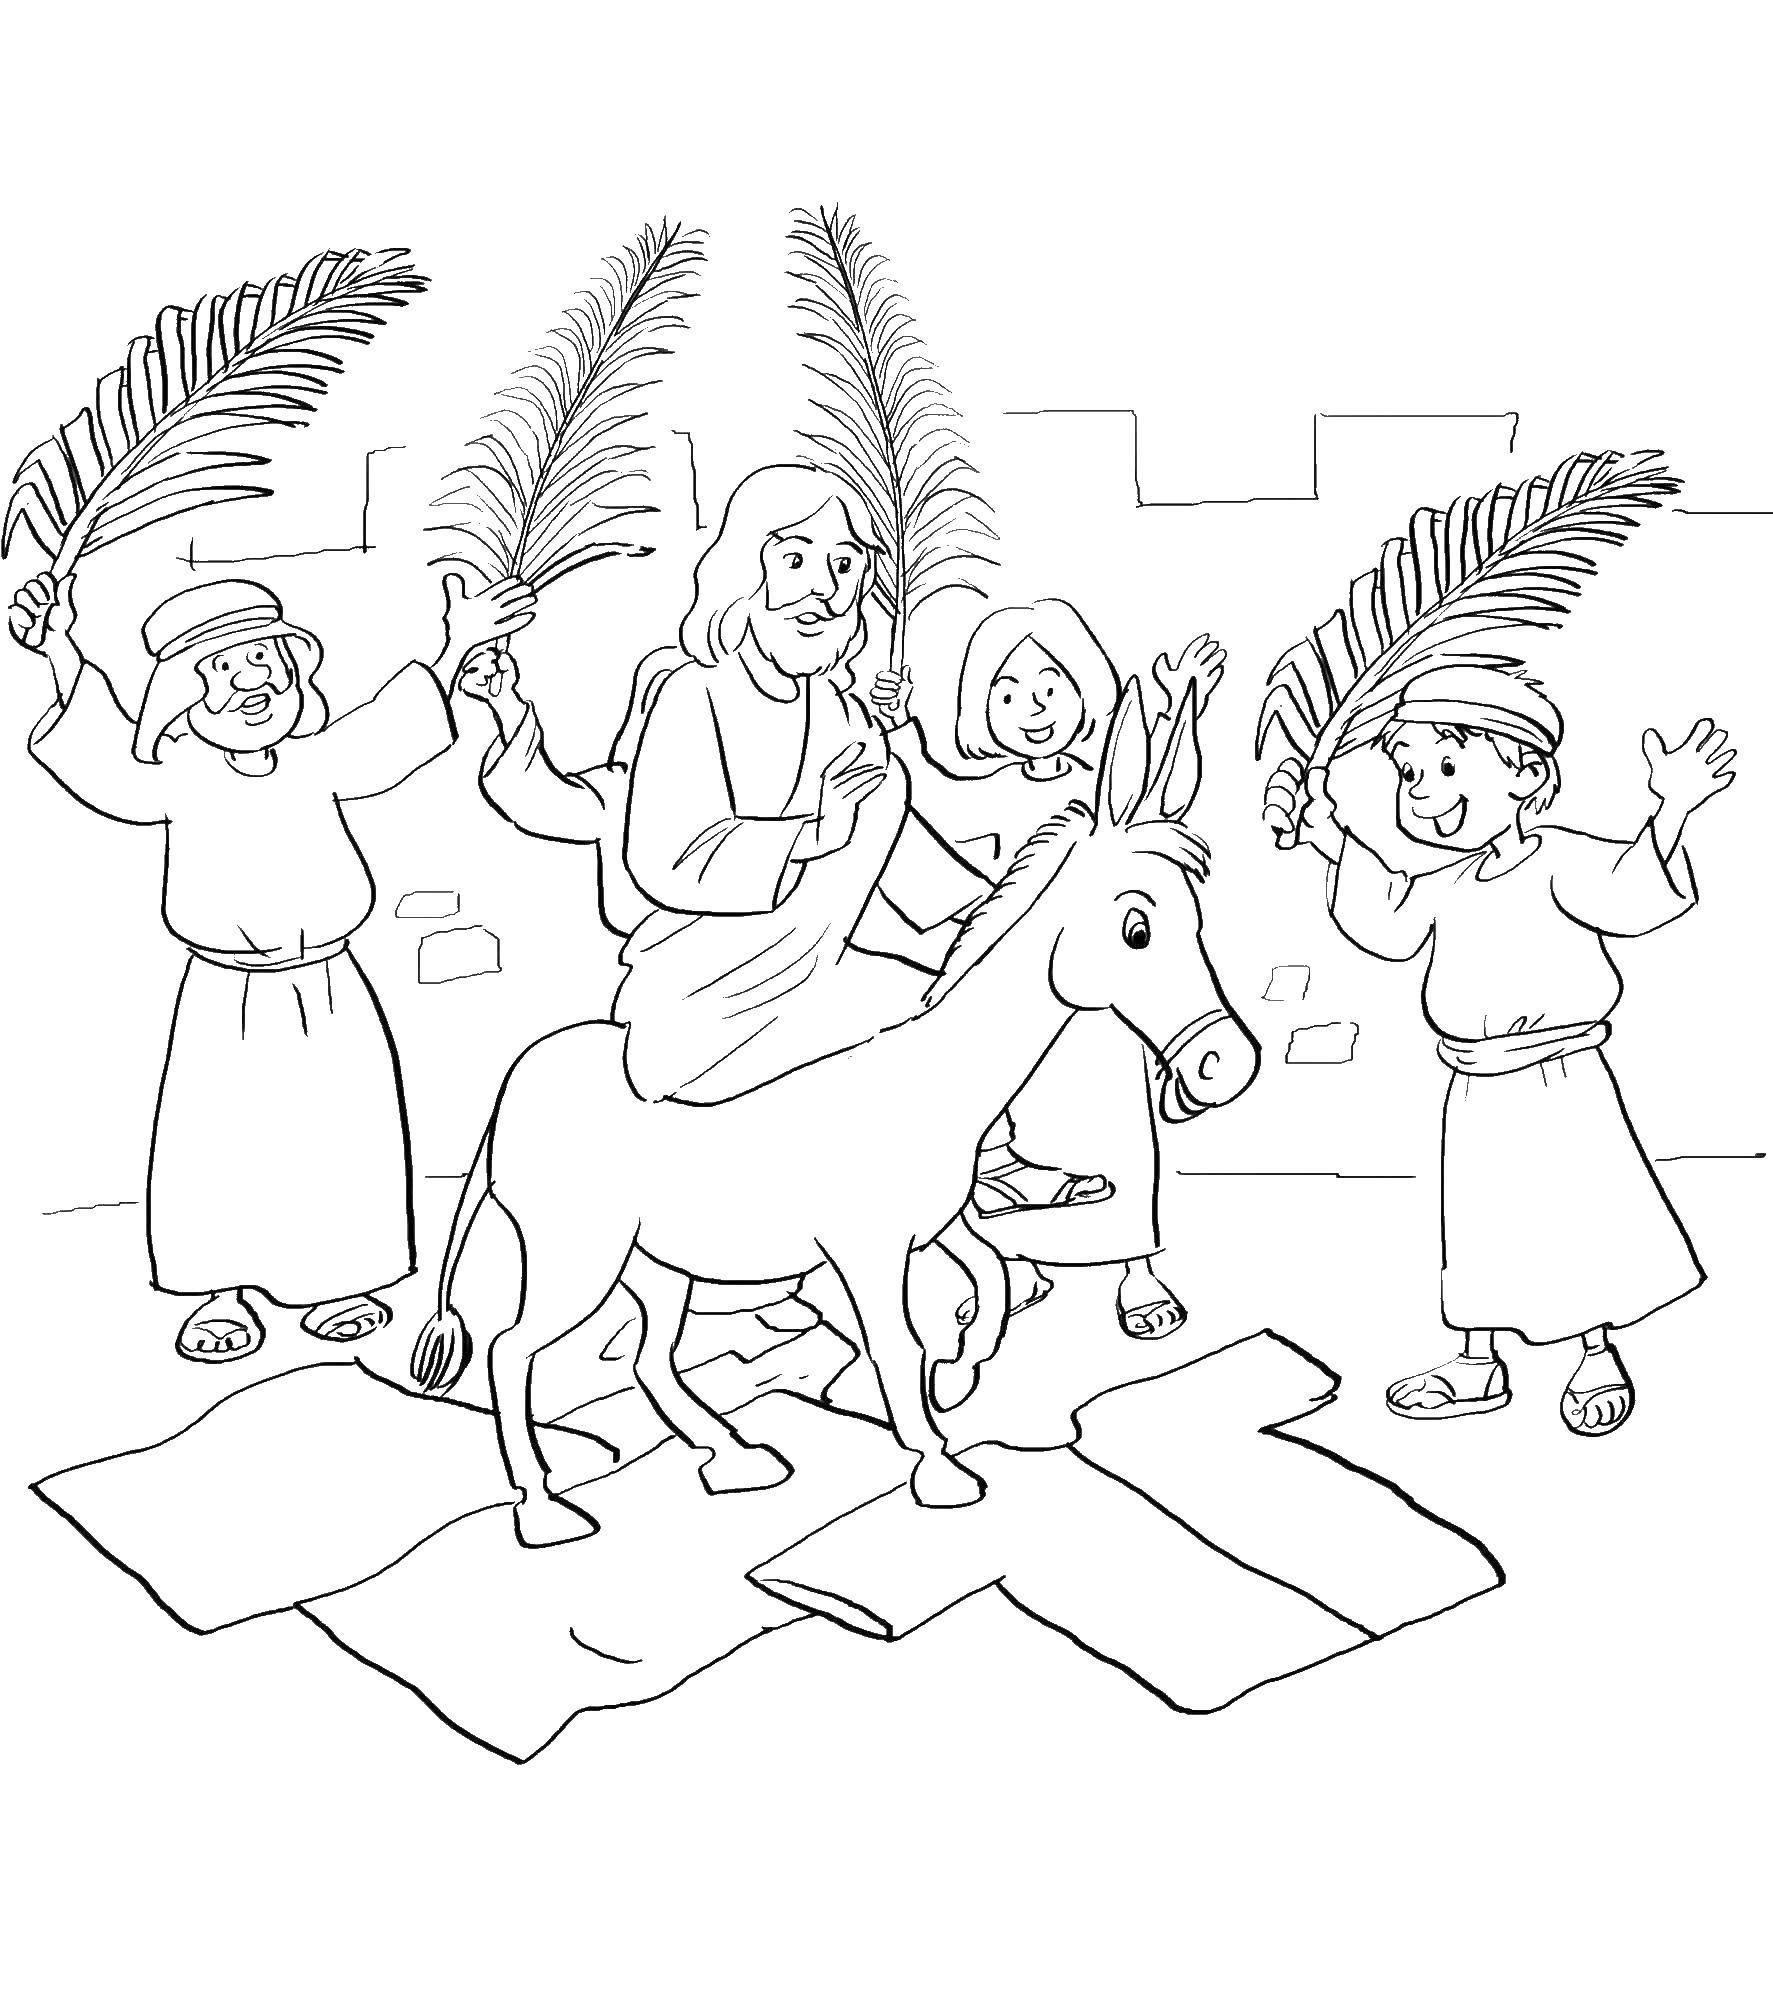 Coloring Jesus on a donkey. Category the Bible. Tags:  Jesus, donkey.